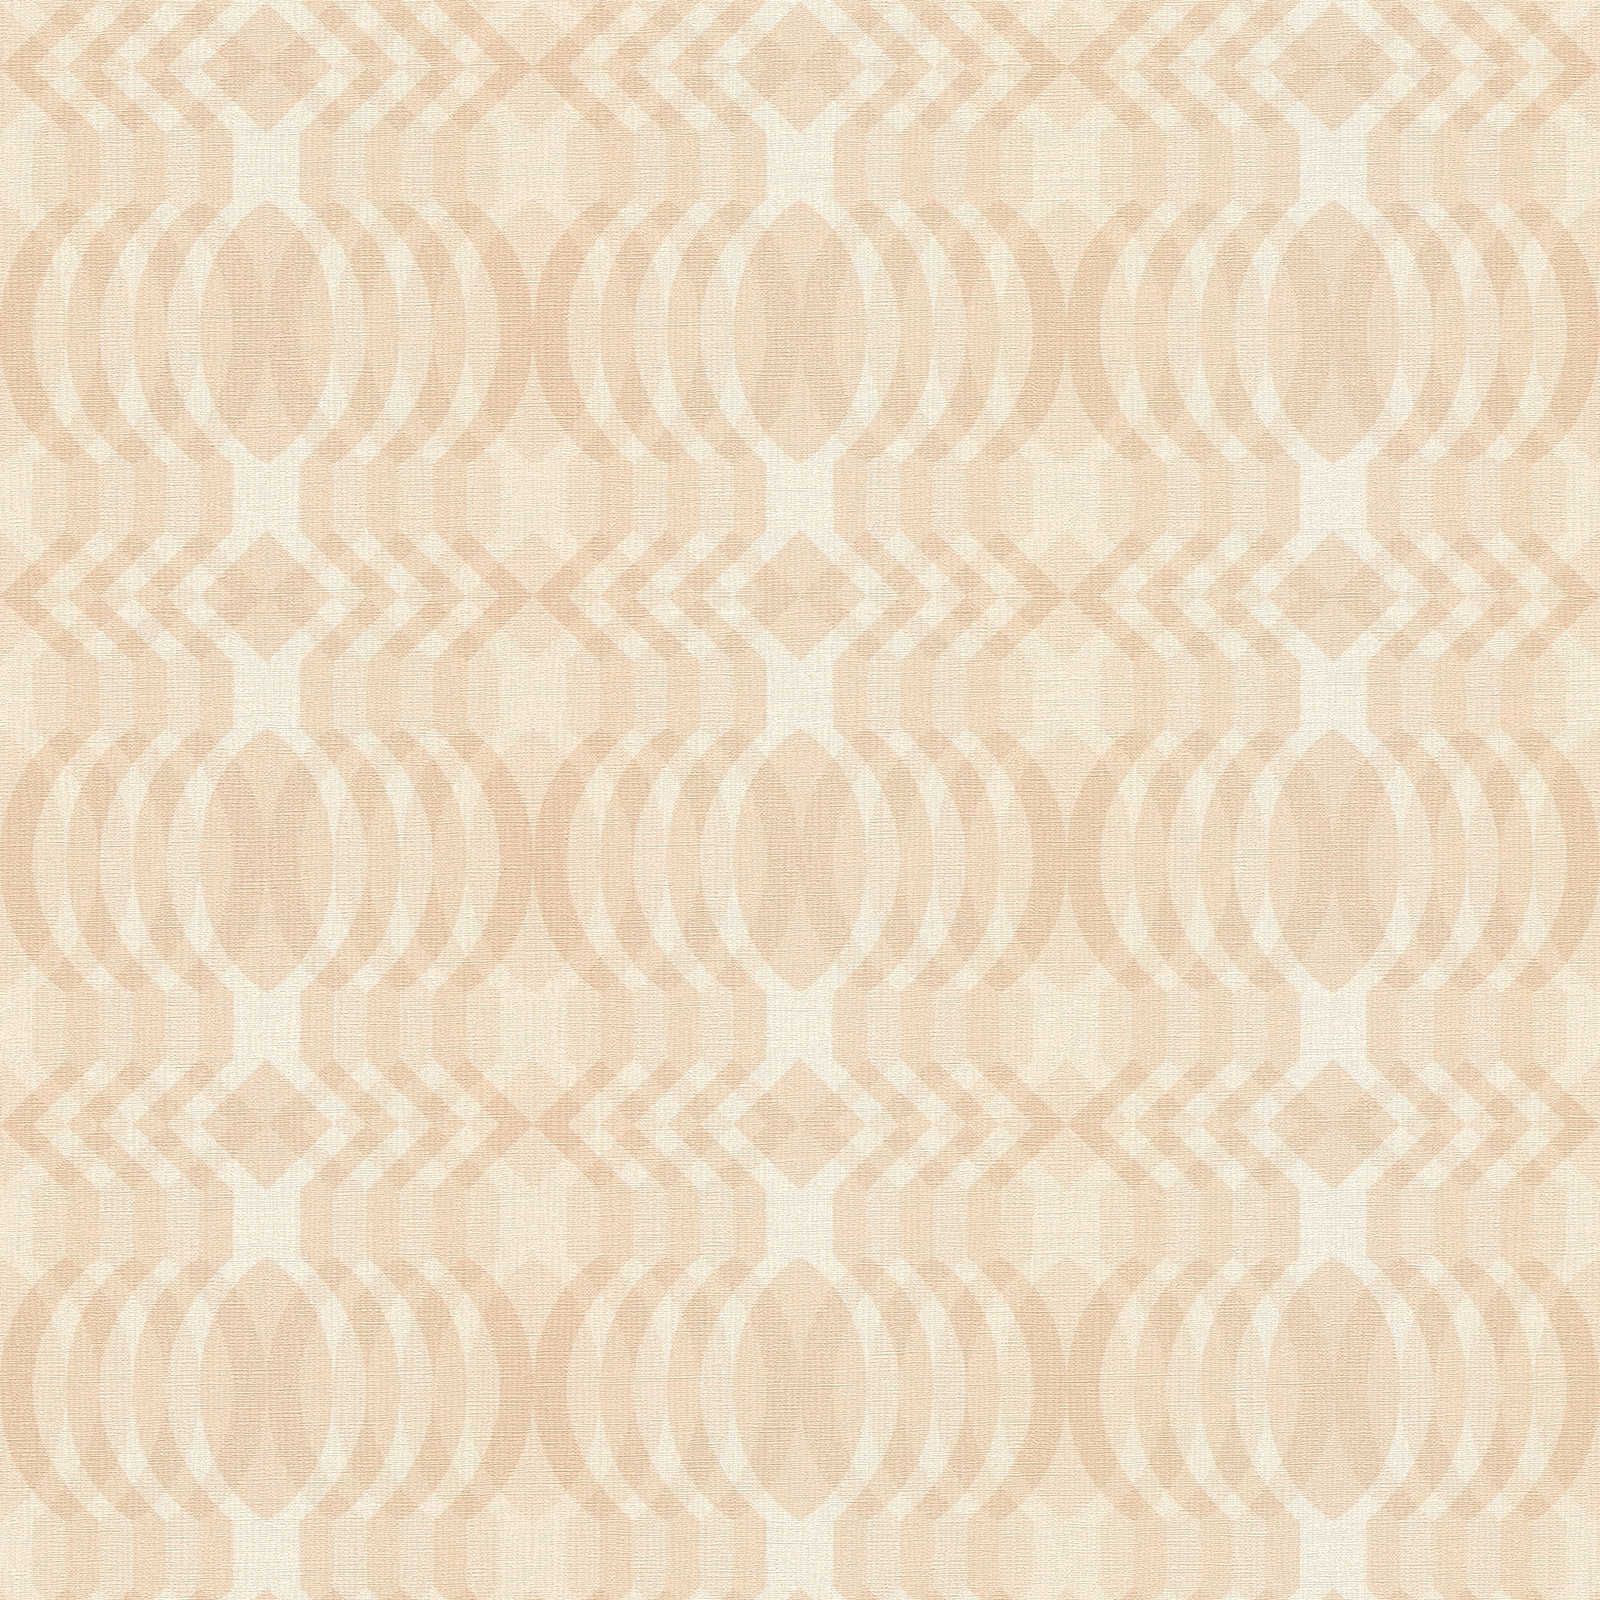         leicht strukturierte Retro Tapete mit geometrischem Muster – Beige, Creme, Weiß
    